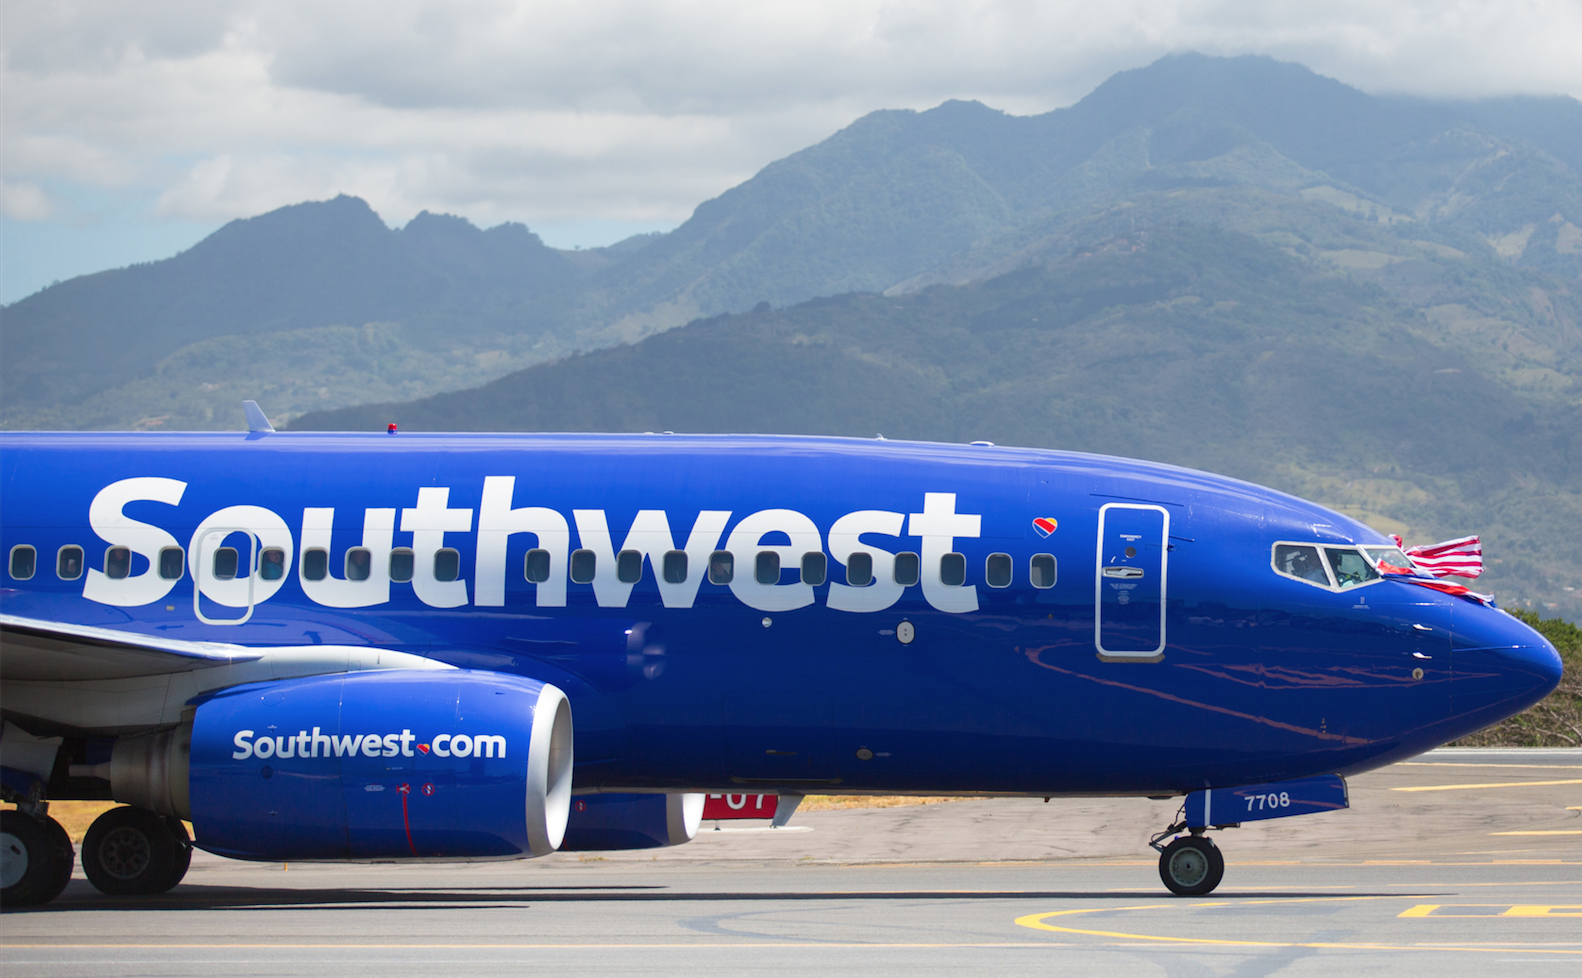 Î‘Ï€Î¿Ï„Î­Î»ÎµÏƒÎ¼Î± ÎµÎ¹ÎºÏŒÎ½Î±Ï‚ Î³Î¹Î± Southwest Airlines extends flight schedule through early 2019